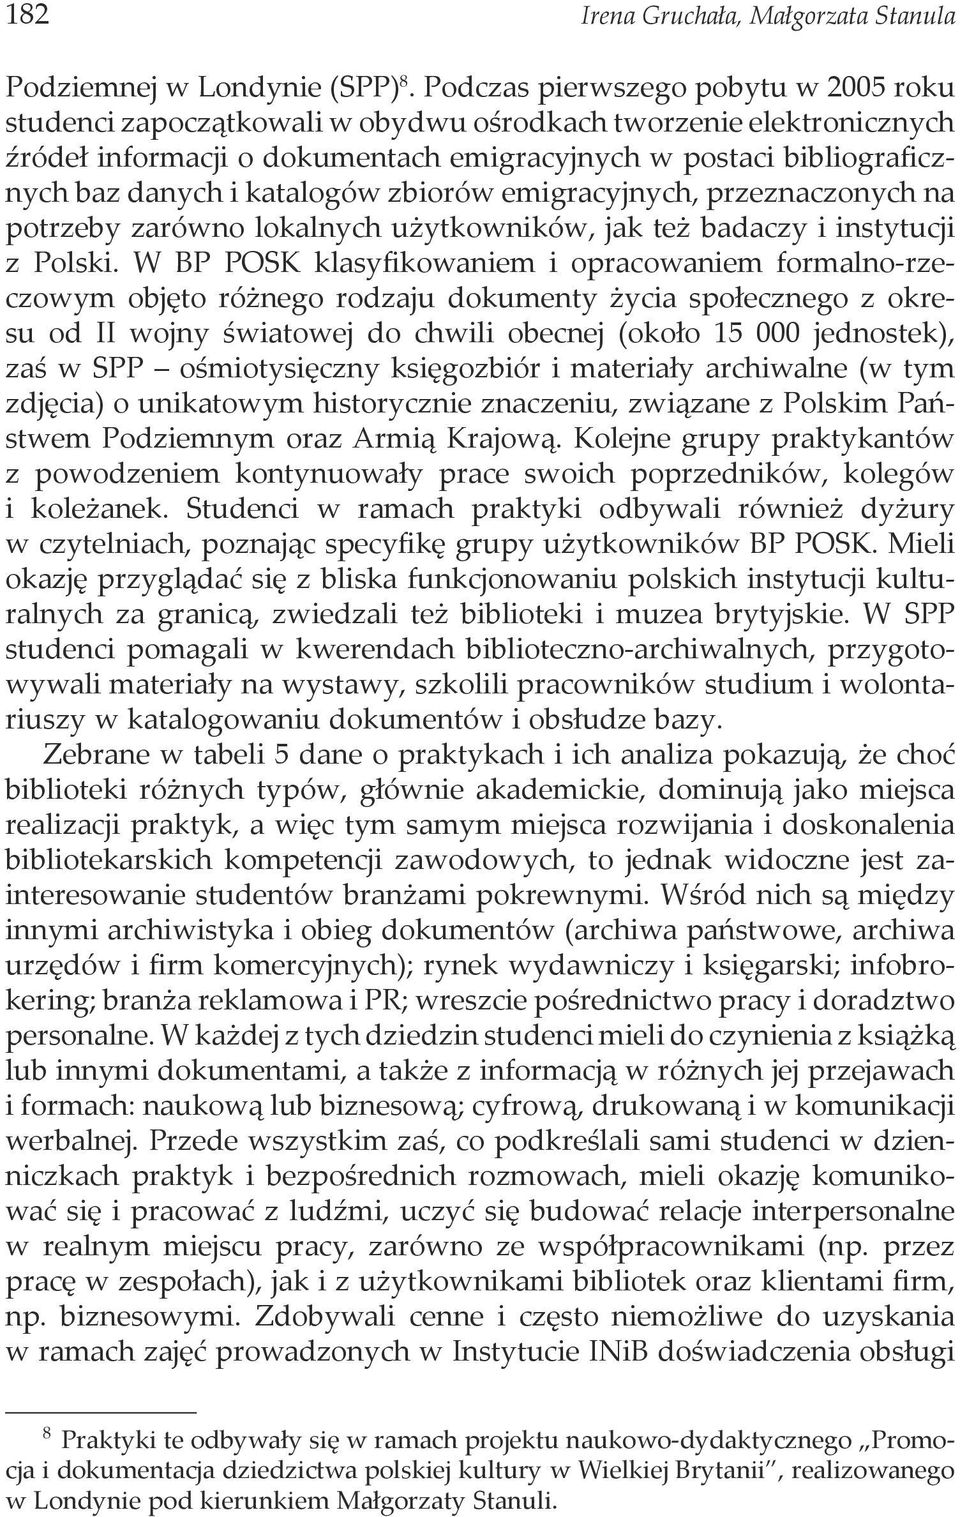 katalogów zbiorów emigracyjnych, przeznaczonych na potrzeby zarówno lokalnych użytkowników, jak też badaczy i instytucji z Polski.